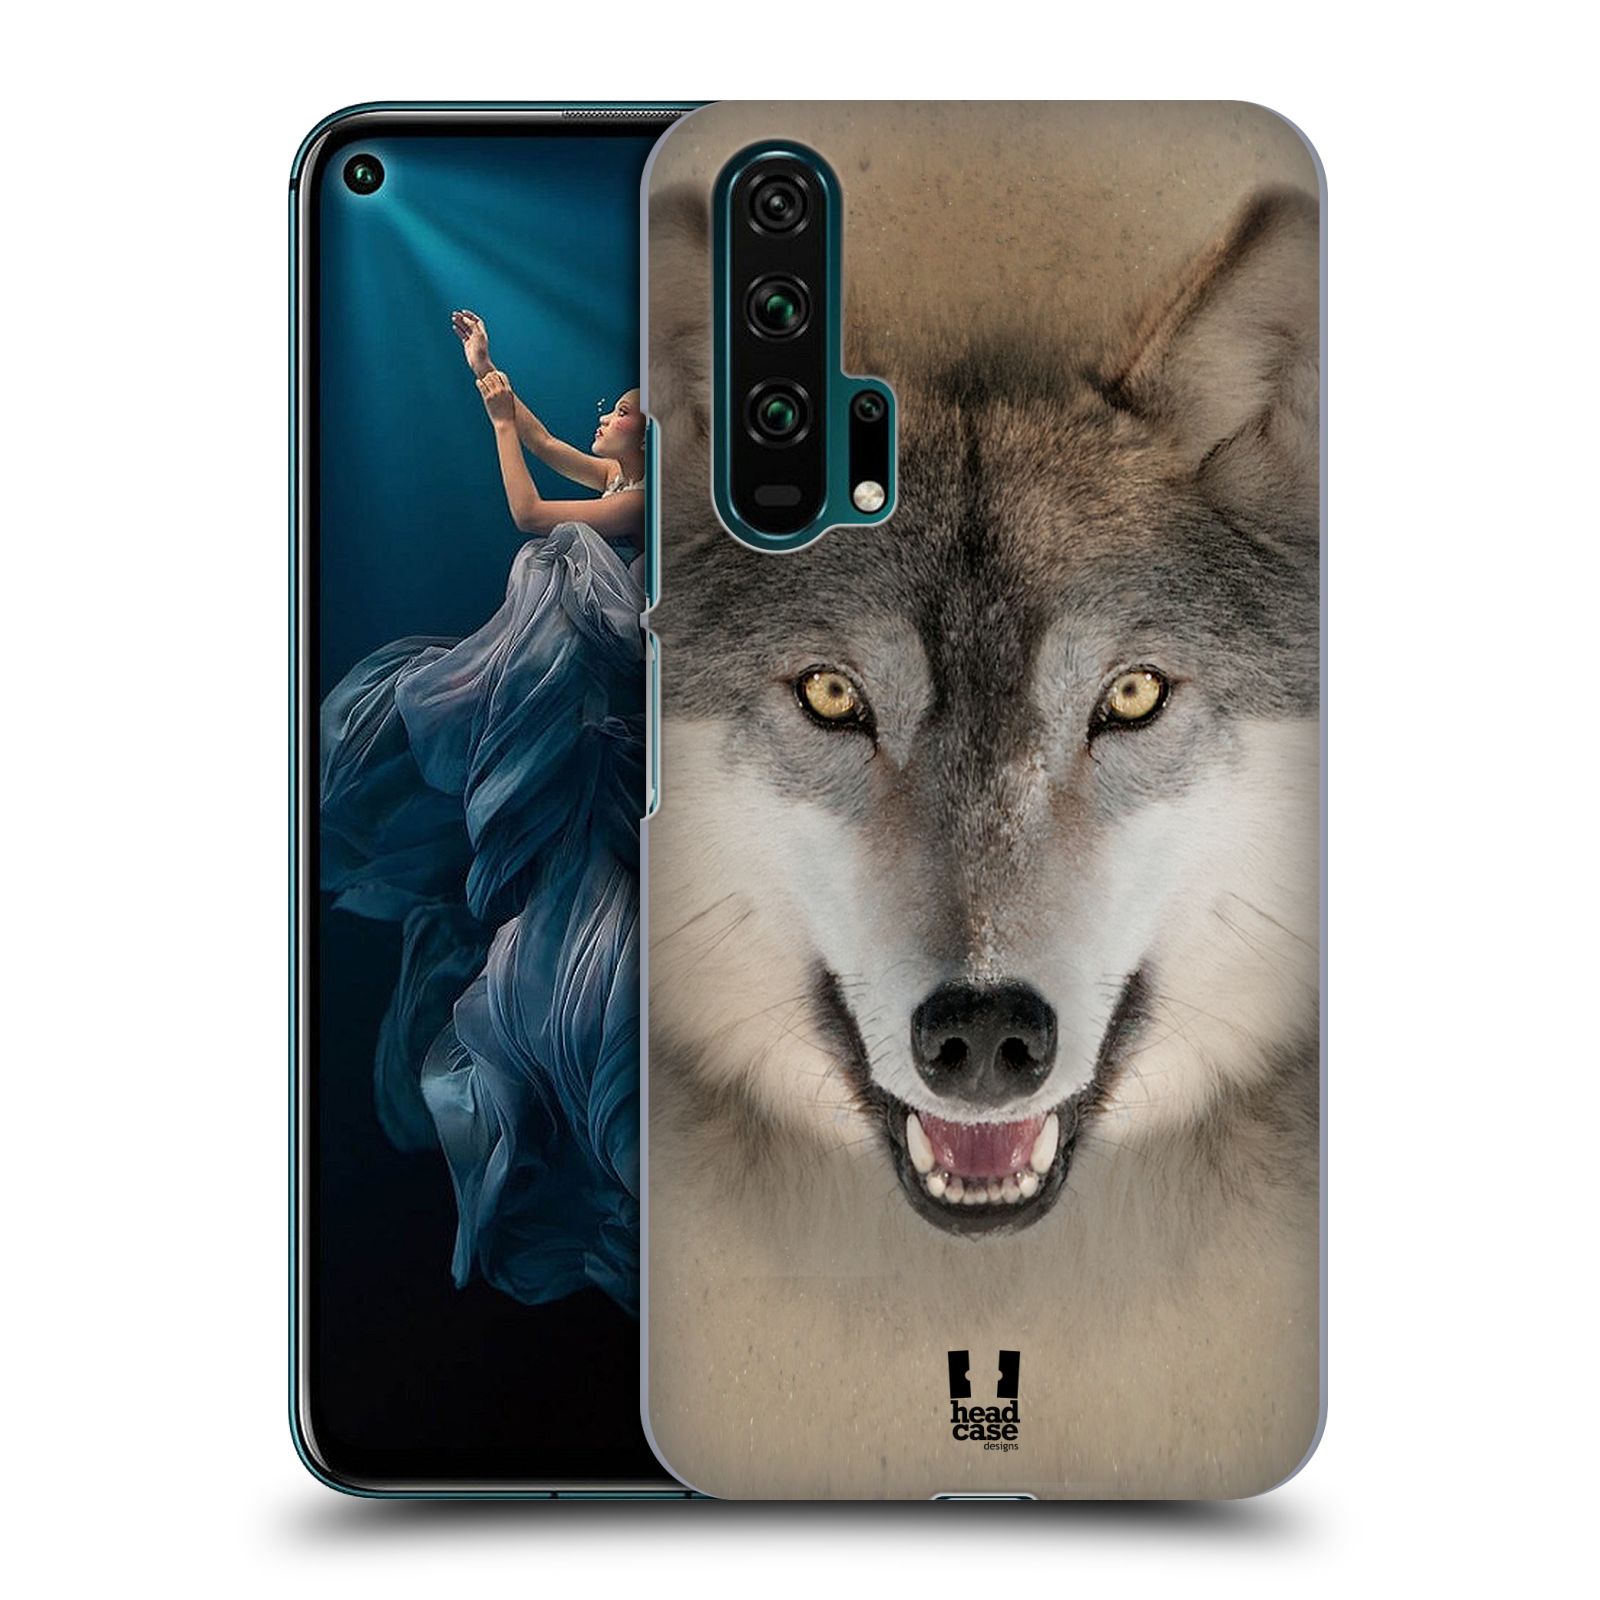 Pouzdro na mobil Honor 20 PRO - HEAD CASE - vzor Zvířecí tváře 2 vlk šedý